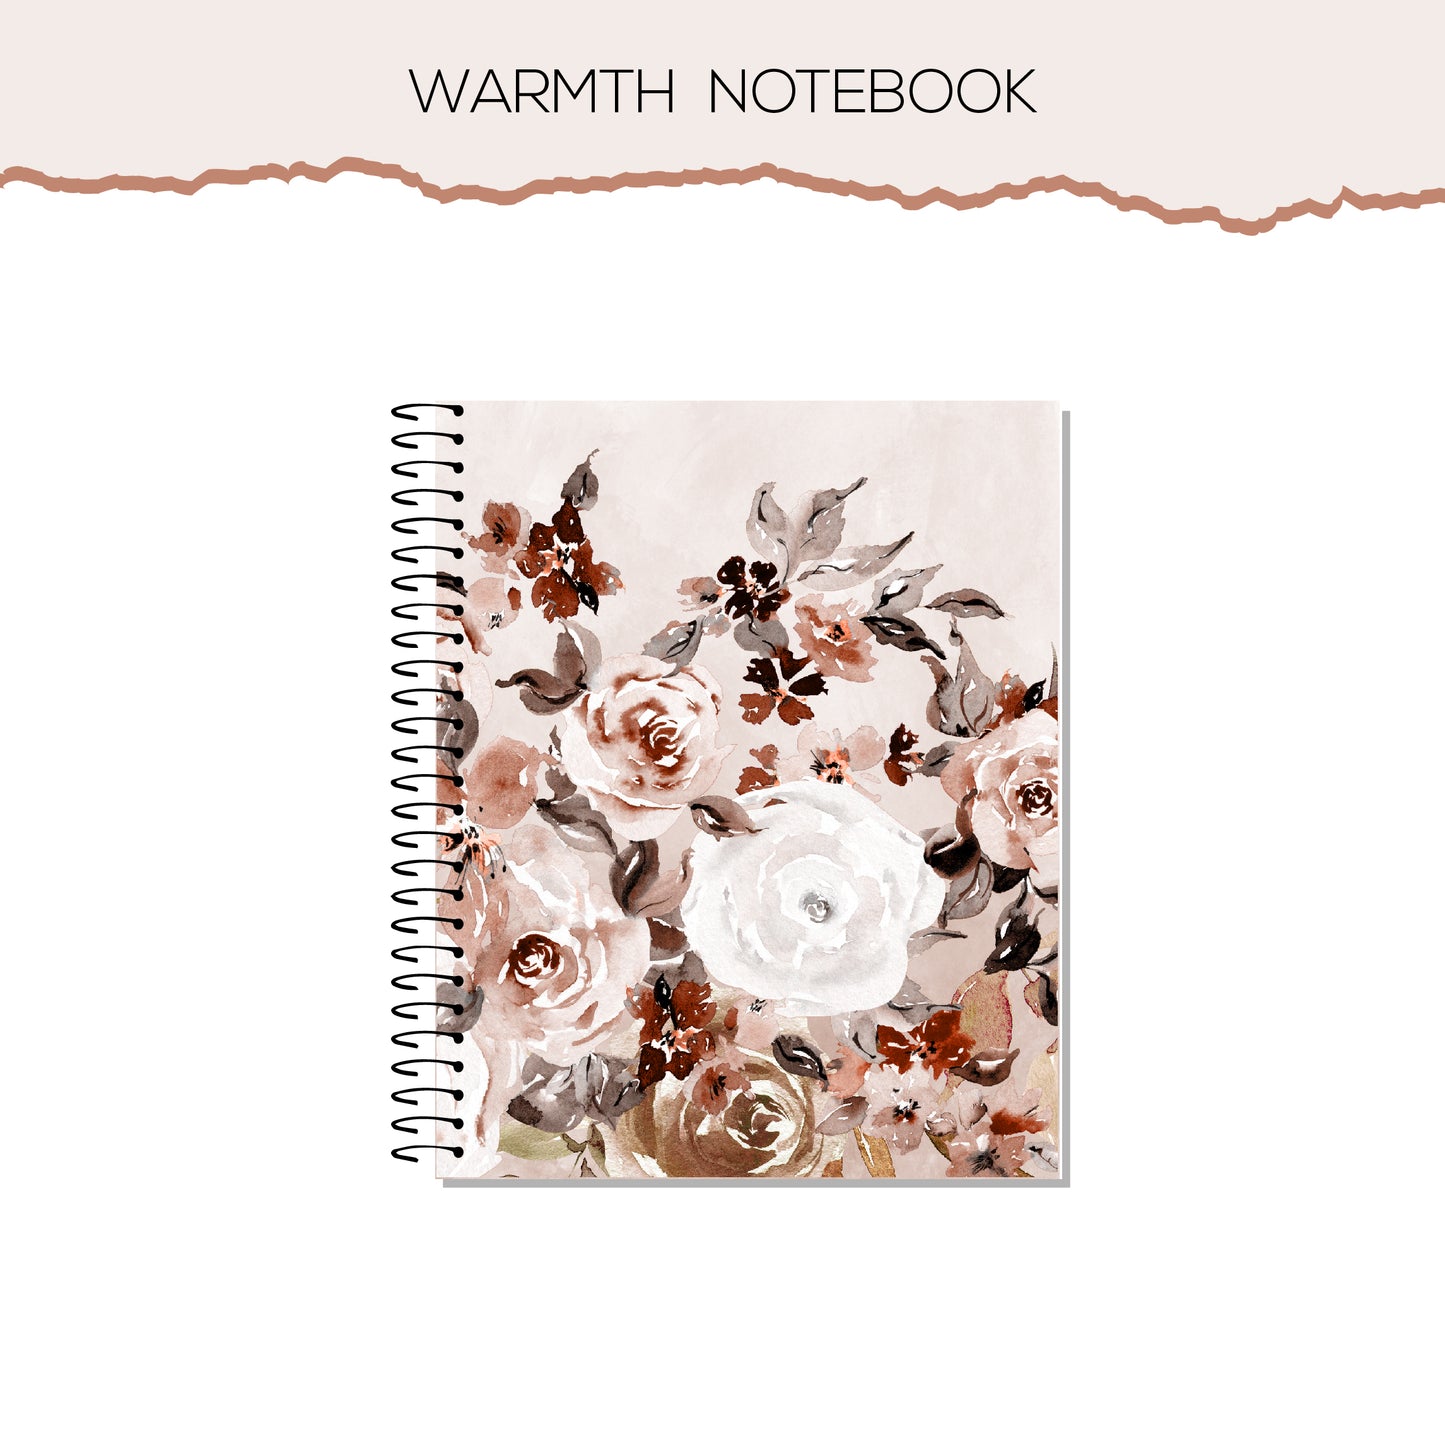 Warmth Notebook